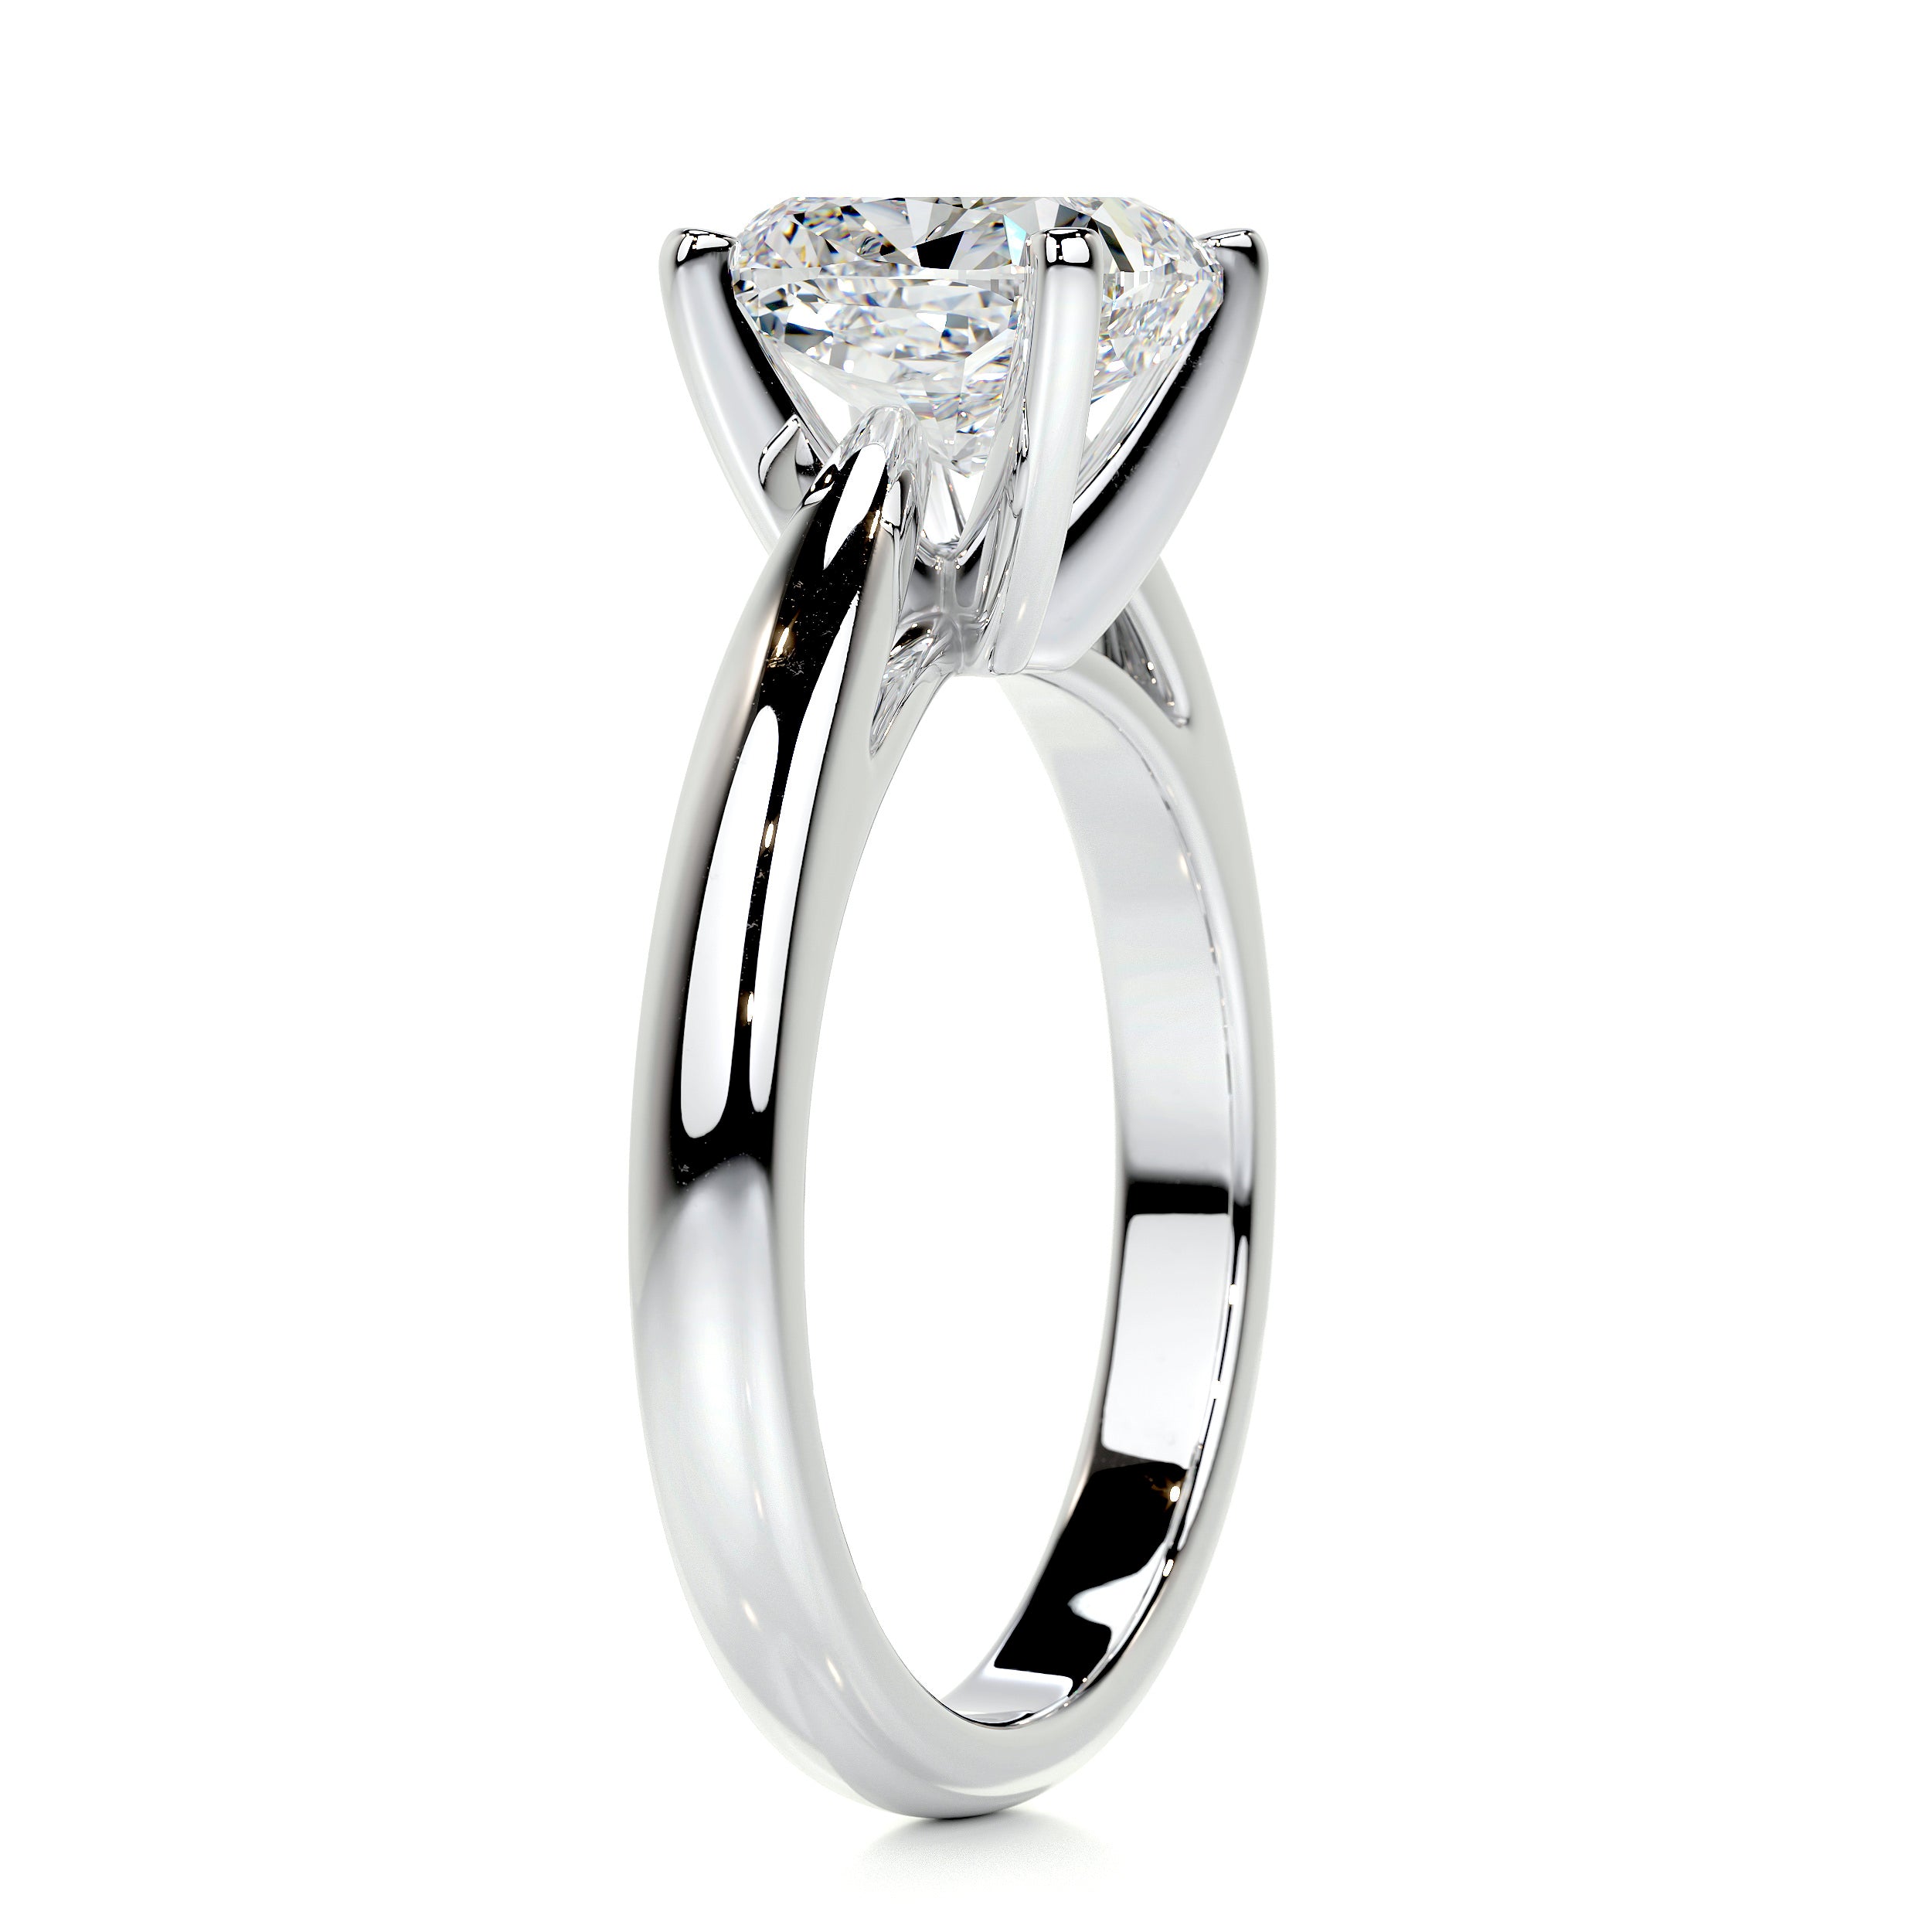 Diana Diamond Engagement Ring   (1.5 Carat) -14K White Gold